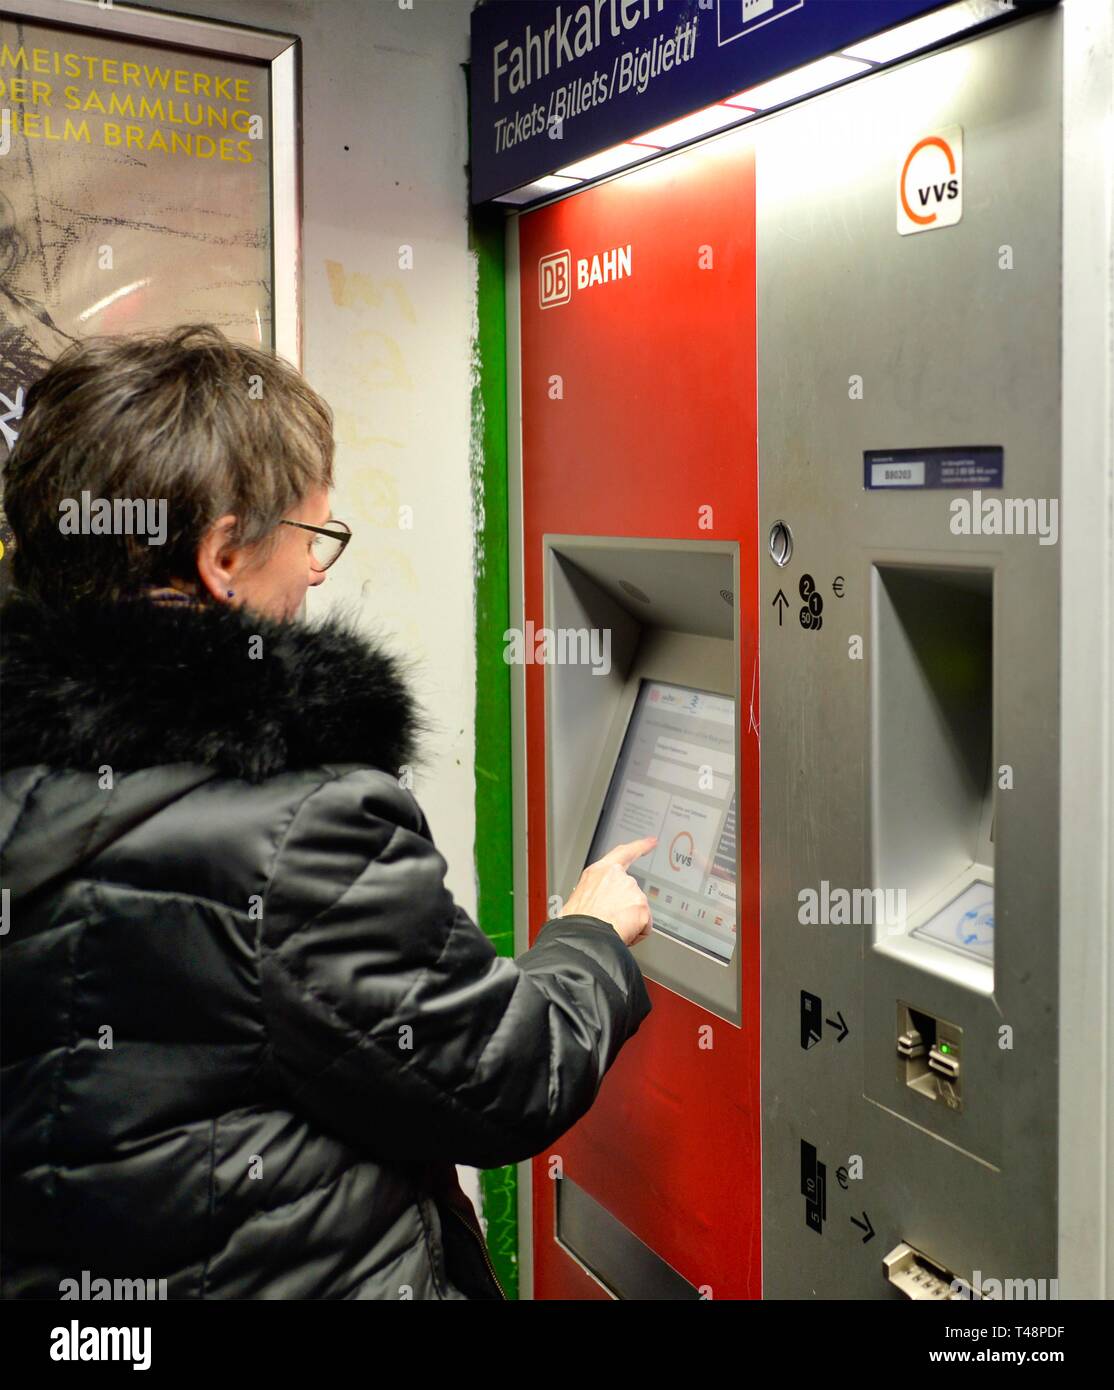 Donna anziana acquista il biglietto alla biglietteria macchina, VVS DB Stuttgart, Baden-Württemberg, Germania Foto Stock